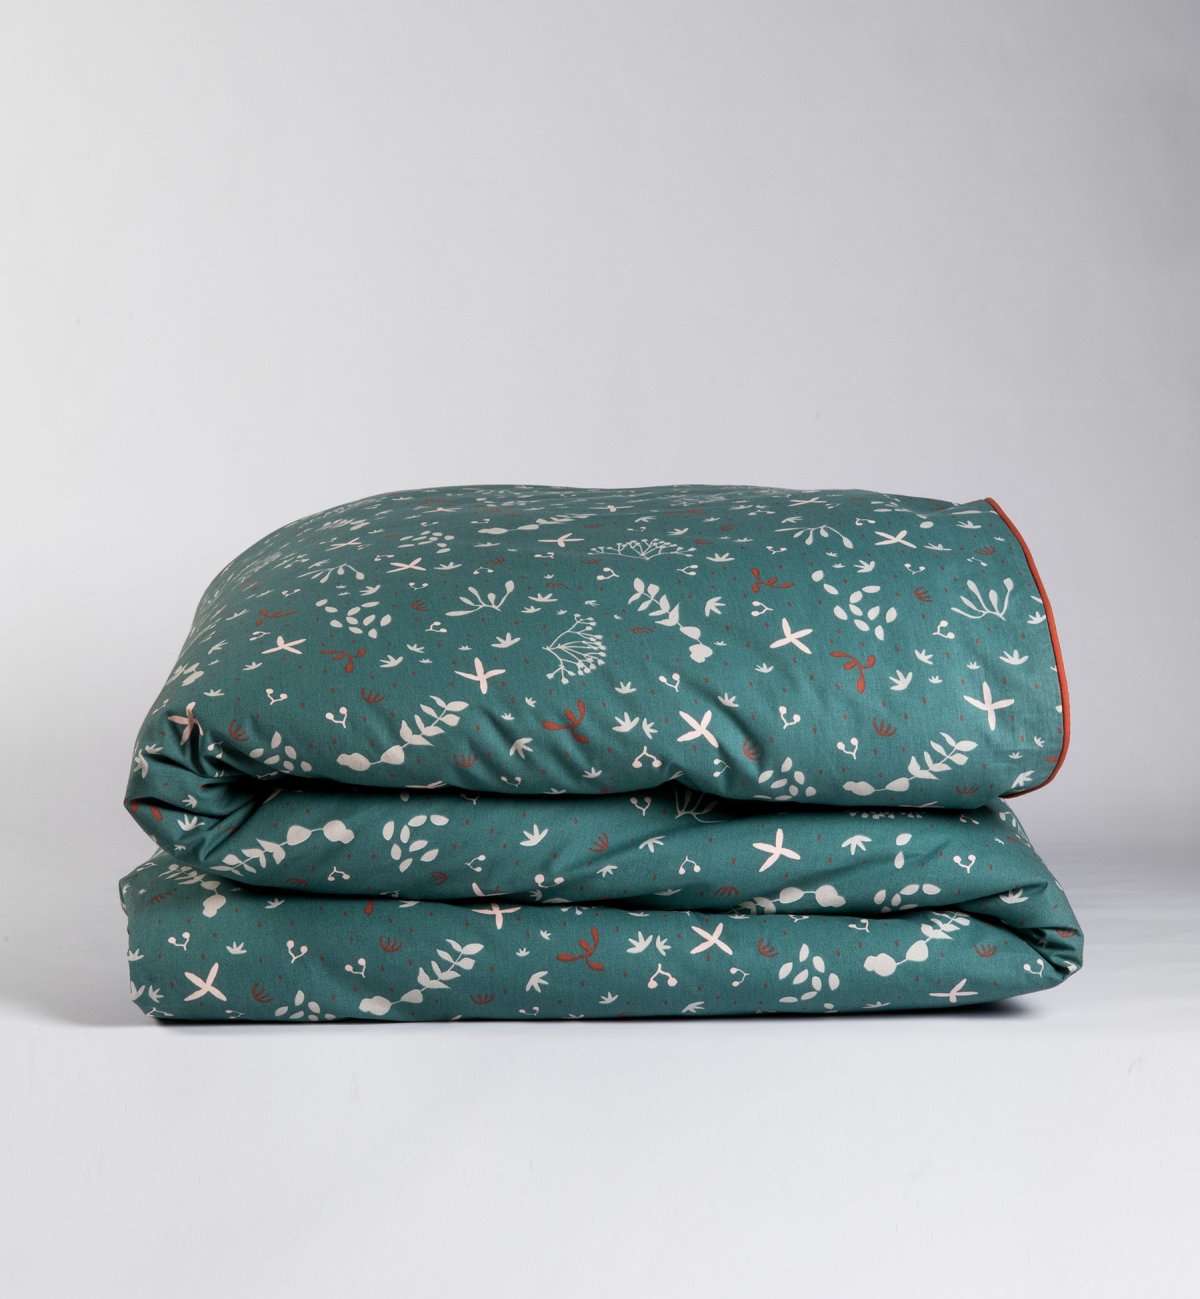 Capa de edredão de Algodão Orgânico para cama individual com padrão Ikebana